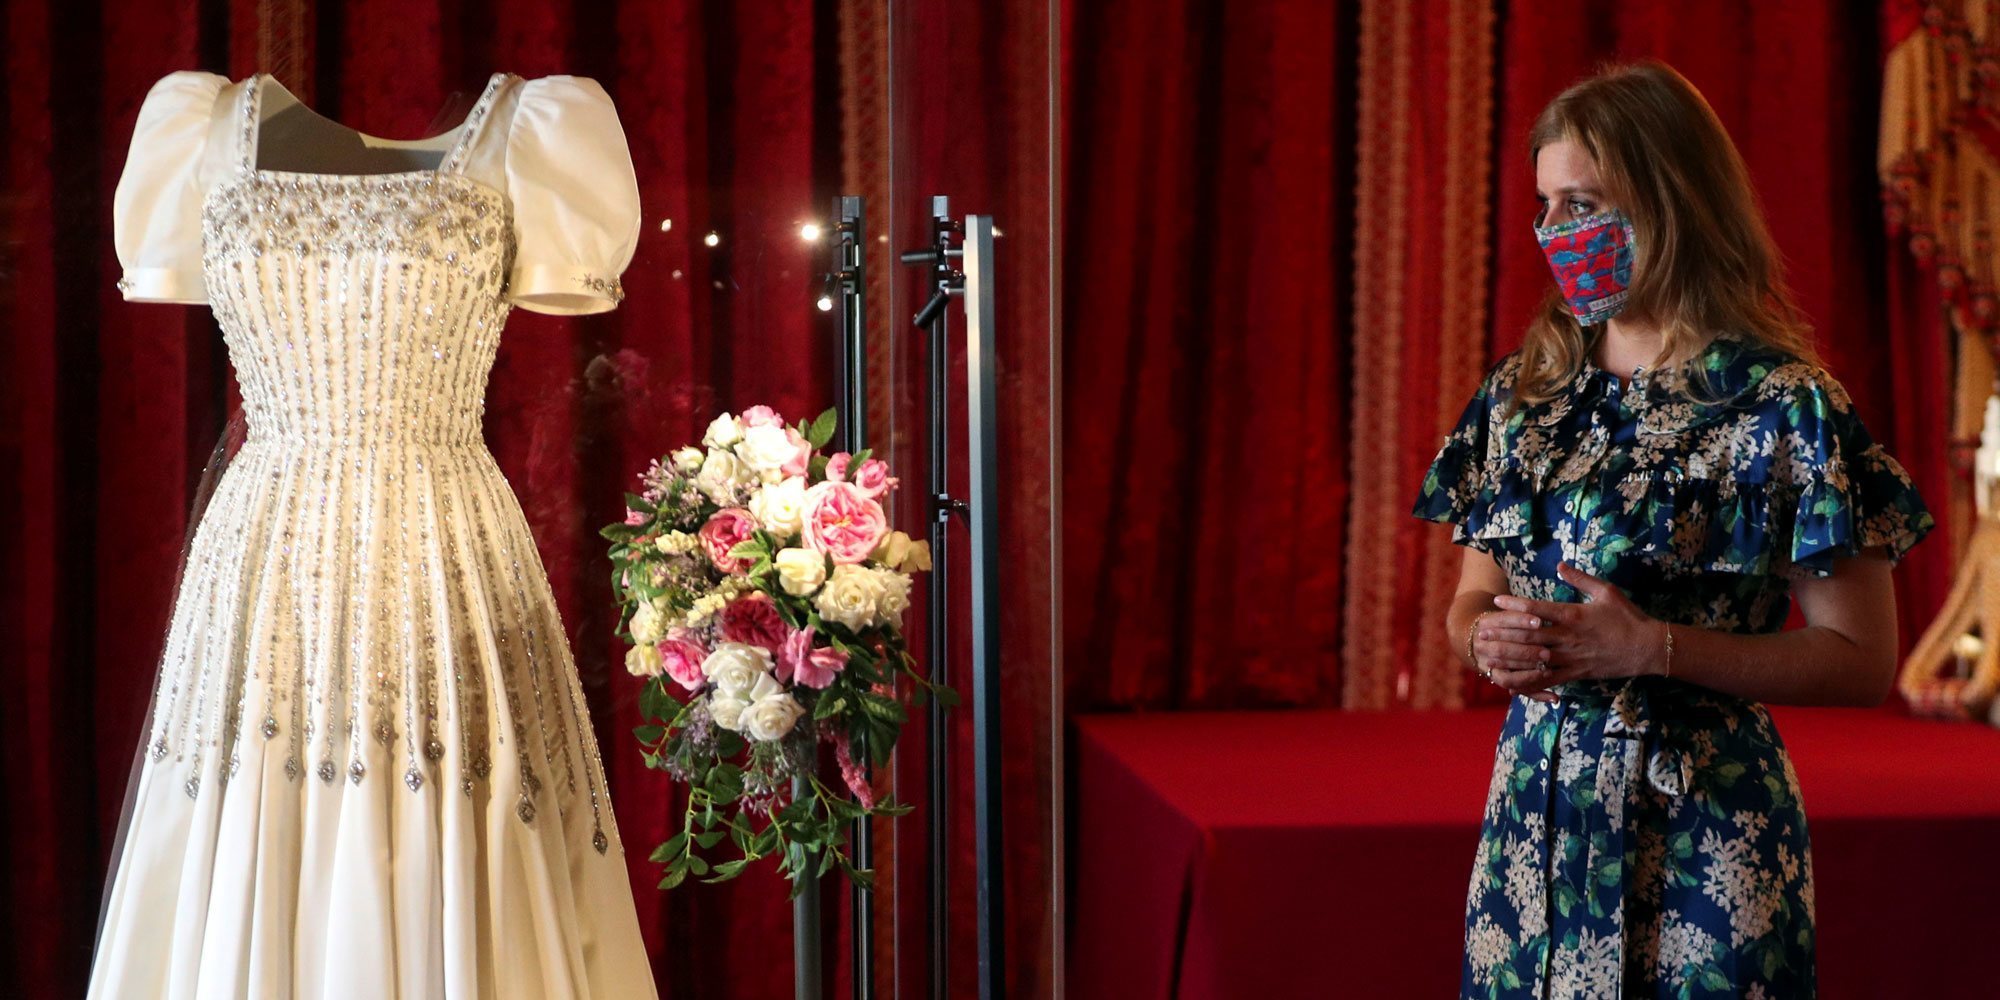 La boda de Beatriz de York, la esperanza económica de la Reina Isabel: exponen el vestido de novia y venden souvenirs